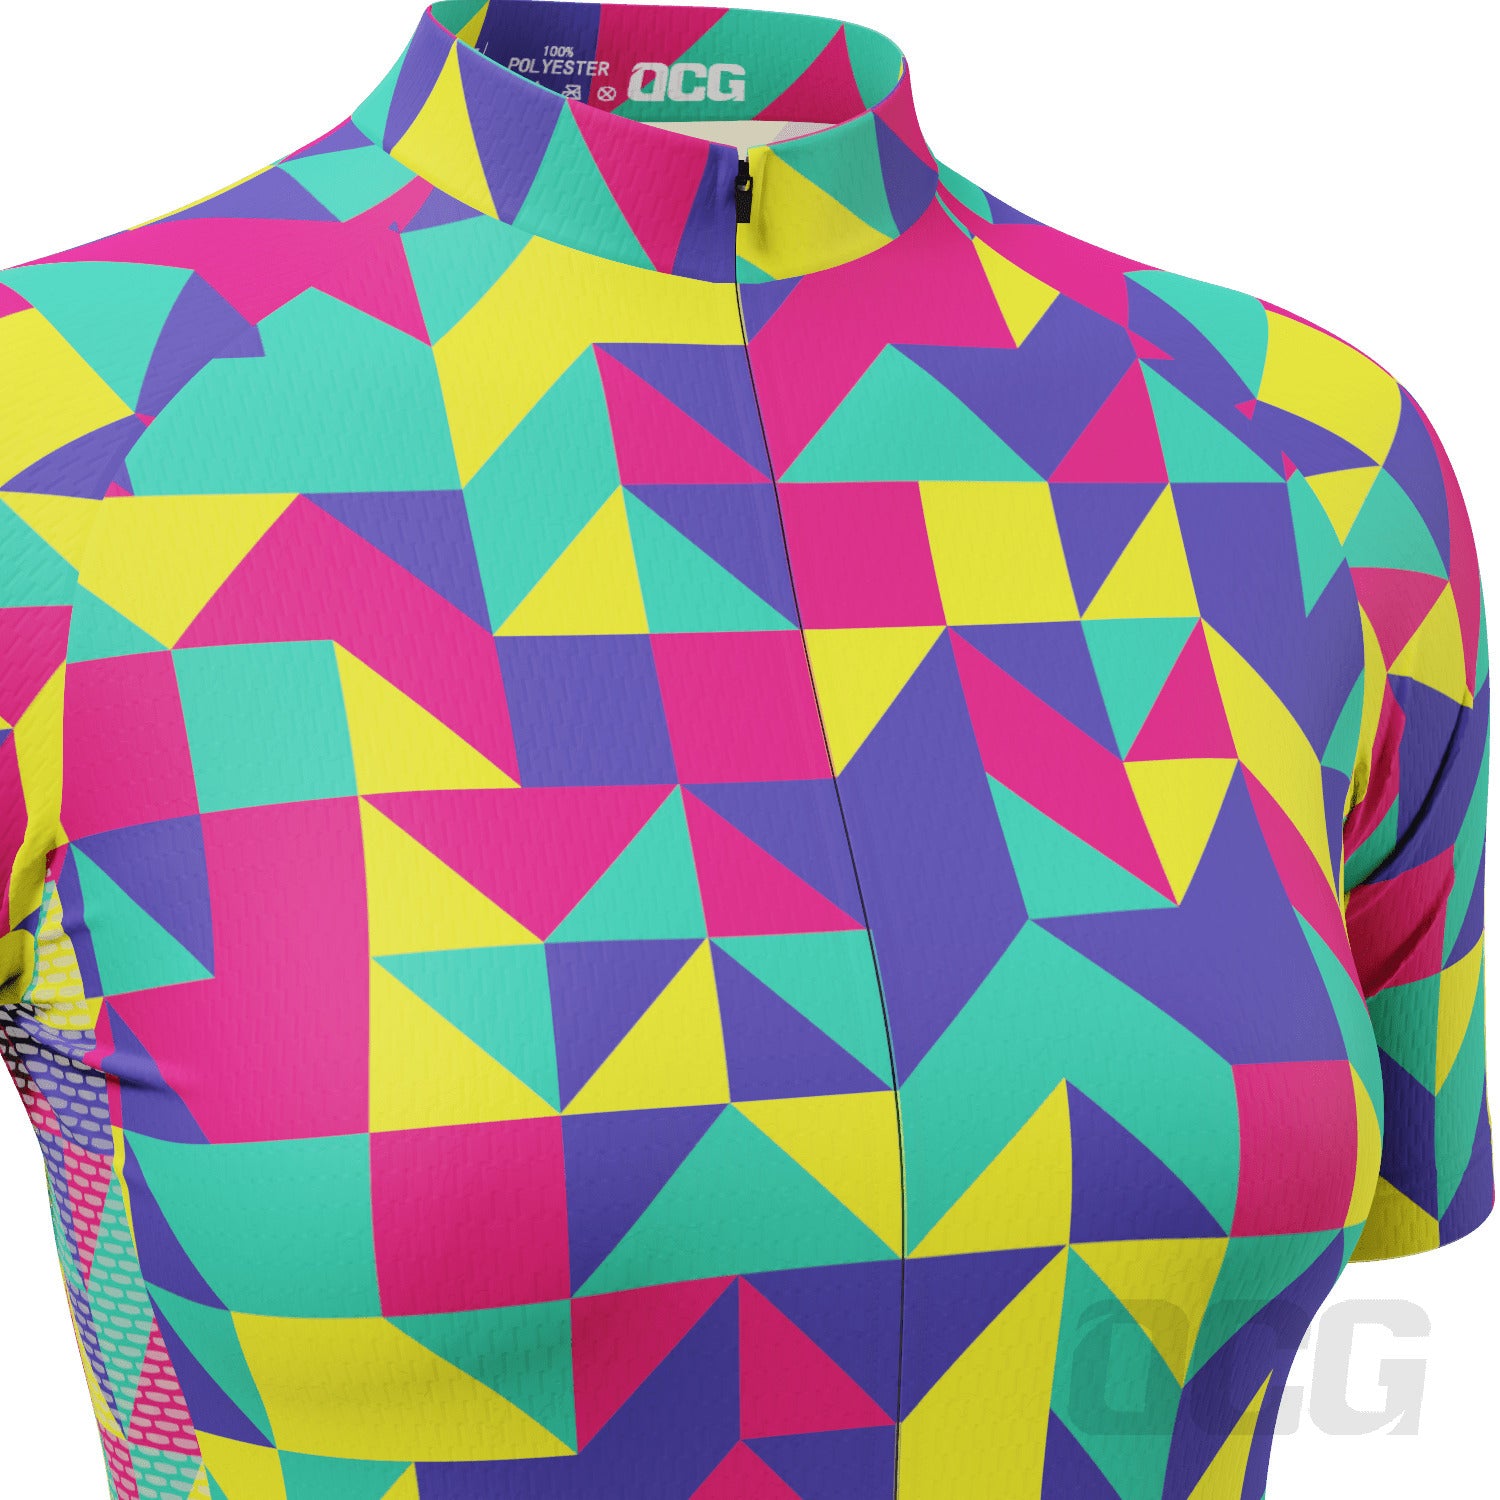 Women's Neon Geometry Short Sleeve Cycling Jersey